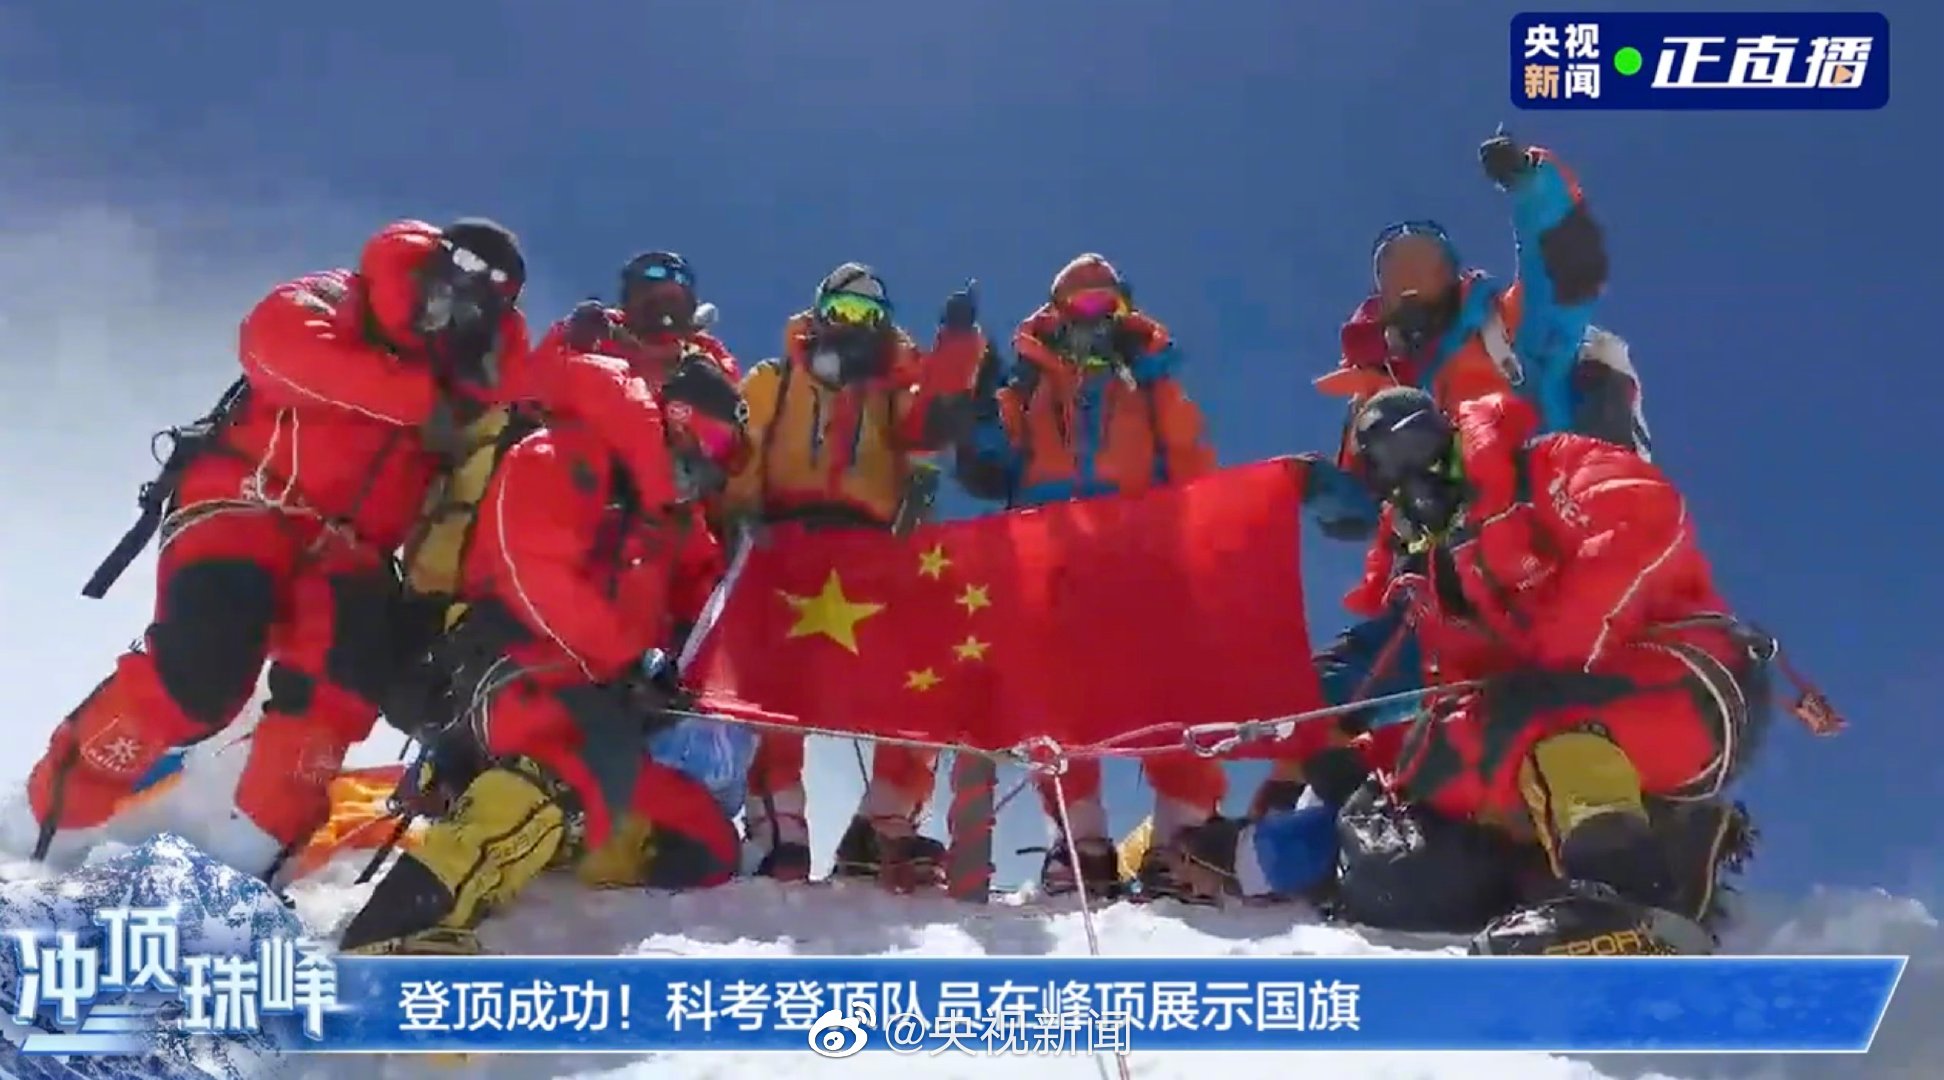 中国科考队员成功架设全世界最高海拔气象站